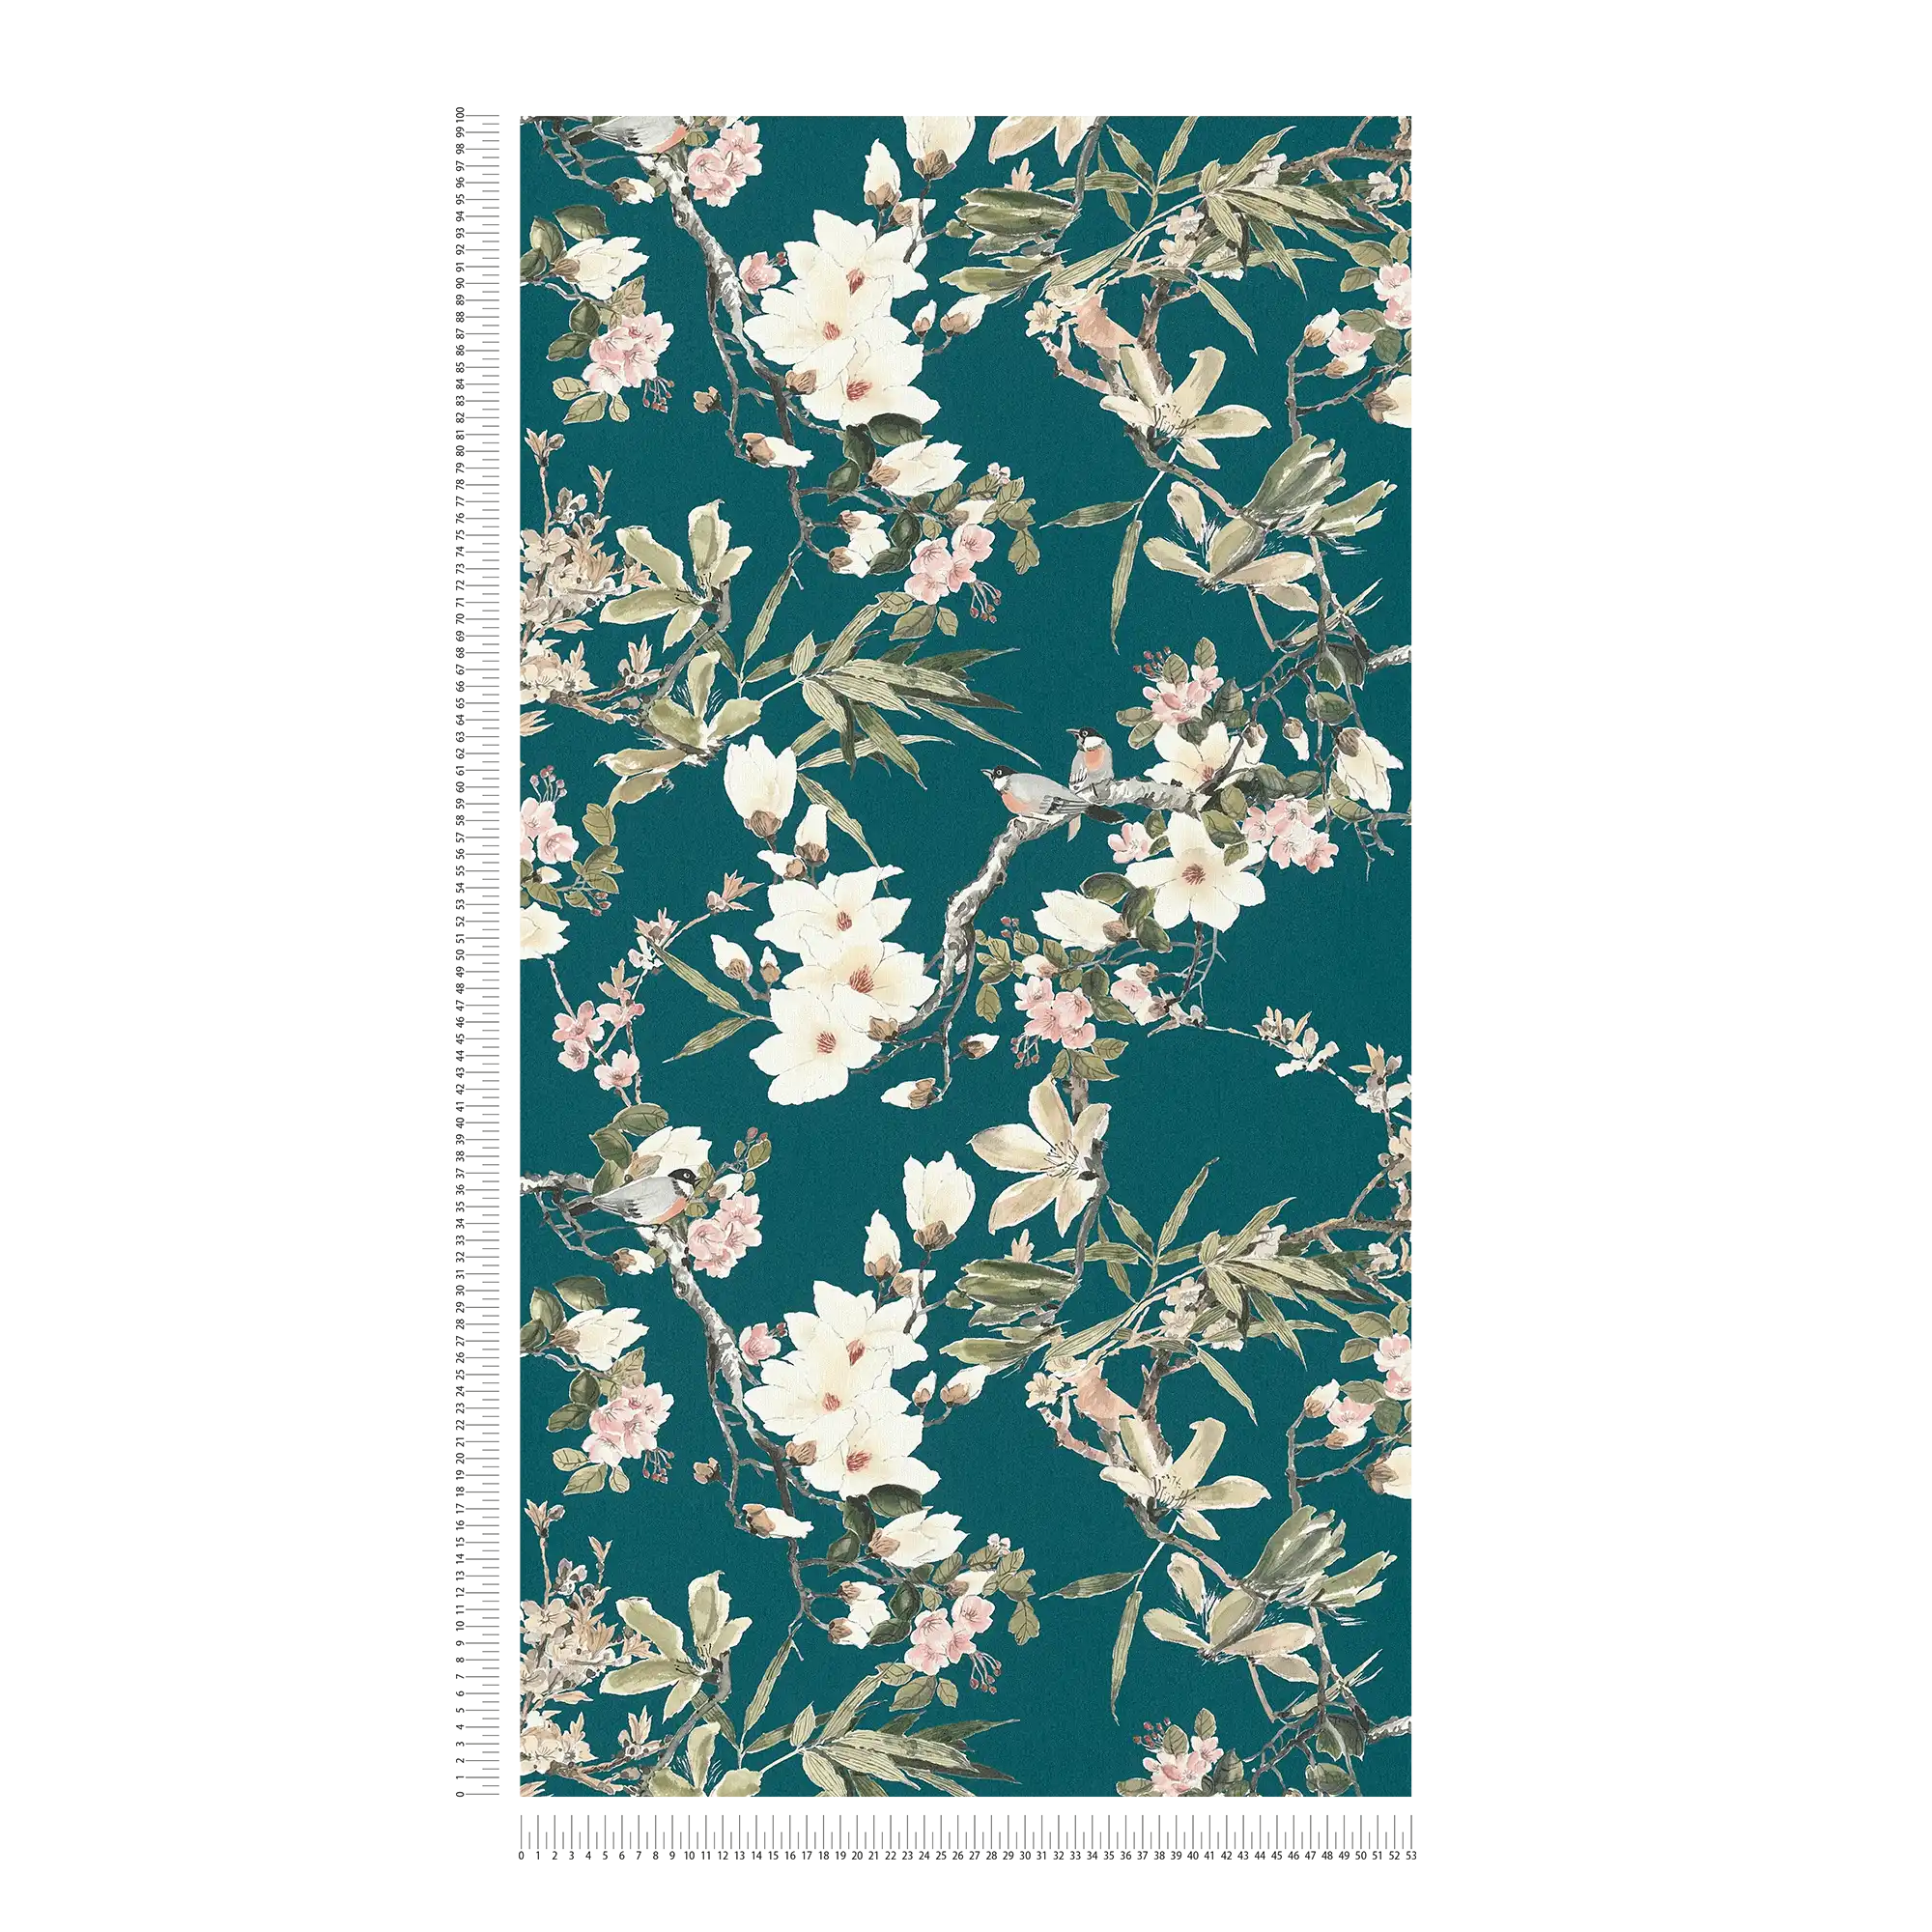             Papel pintado no tejido diseño naturaleza flores ramas y pájaros - azul, verde
        